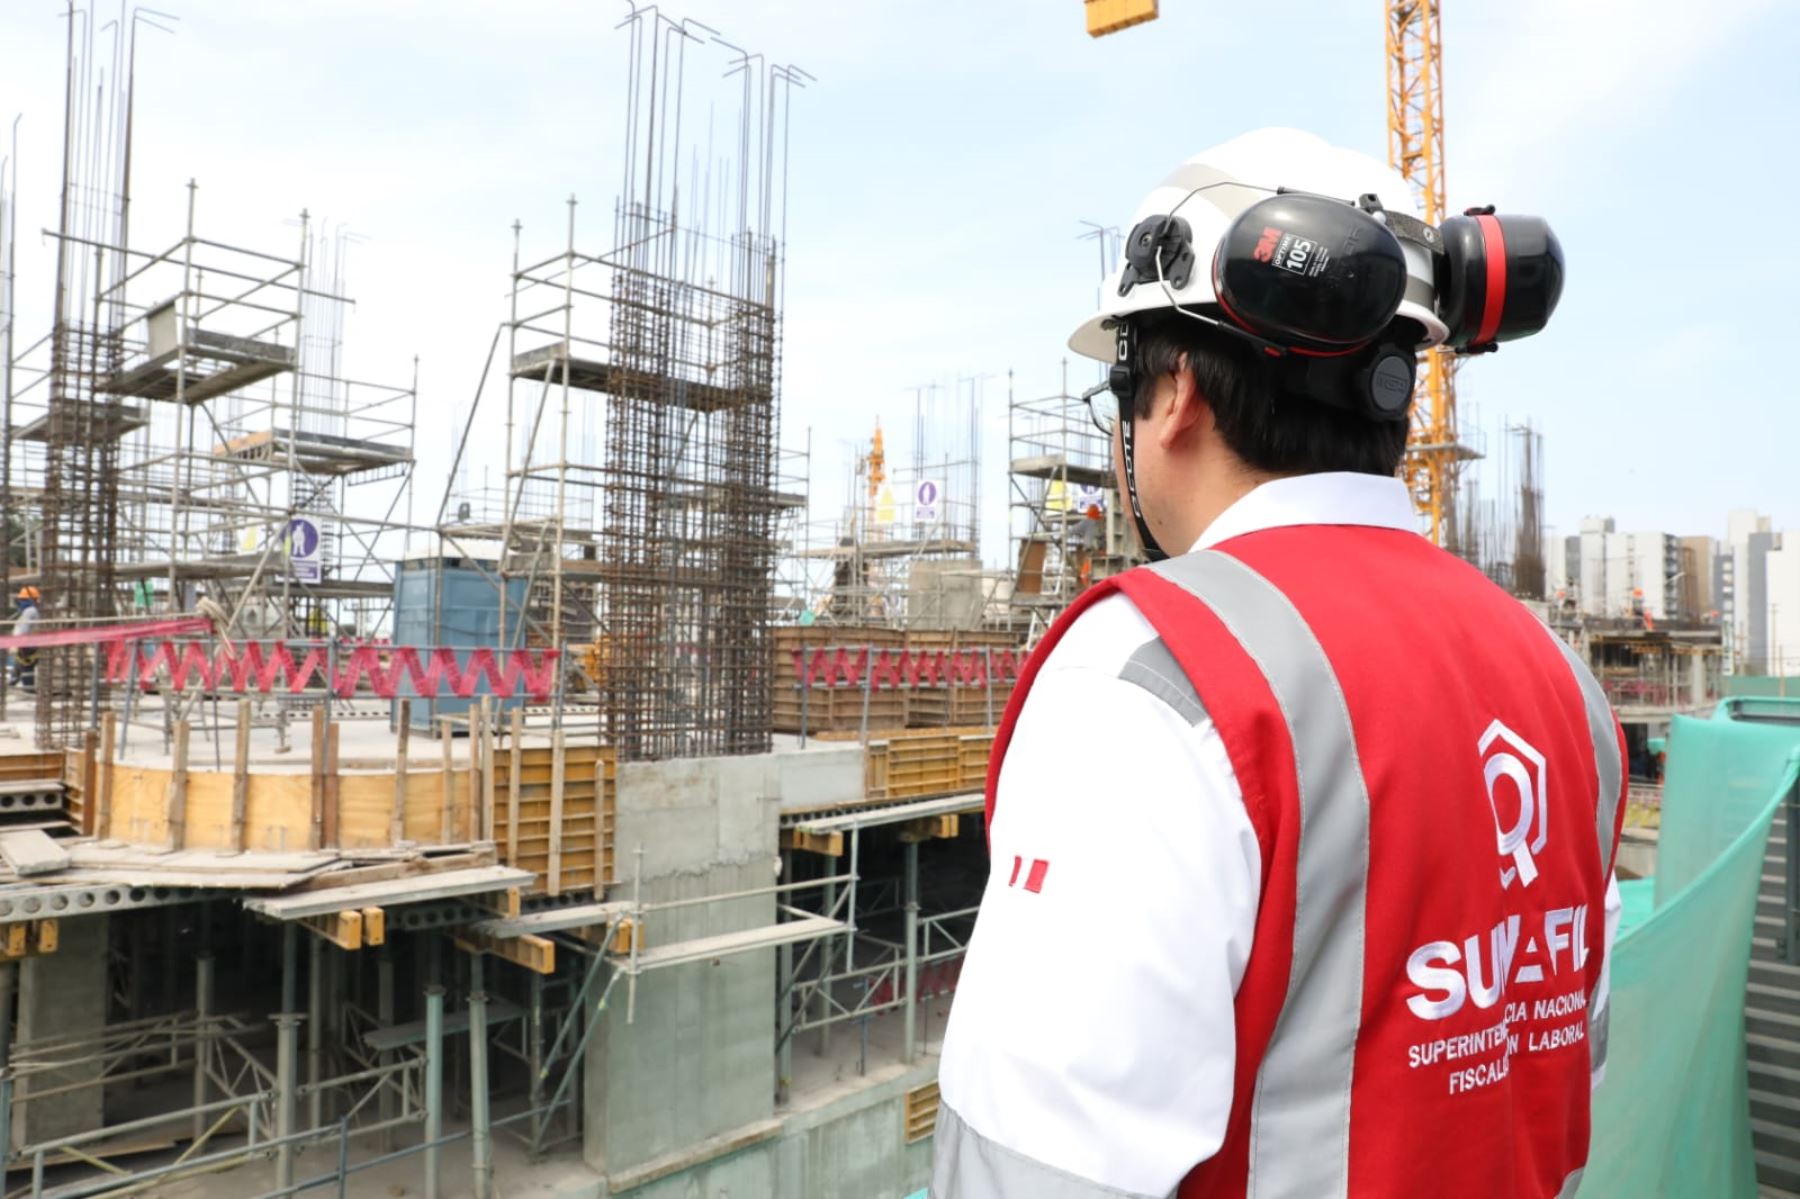 Inspector de Sunafil inspecciona condiciones laborales en una obra de construcción. Foto: Cortesía.